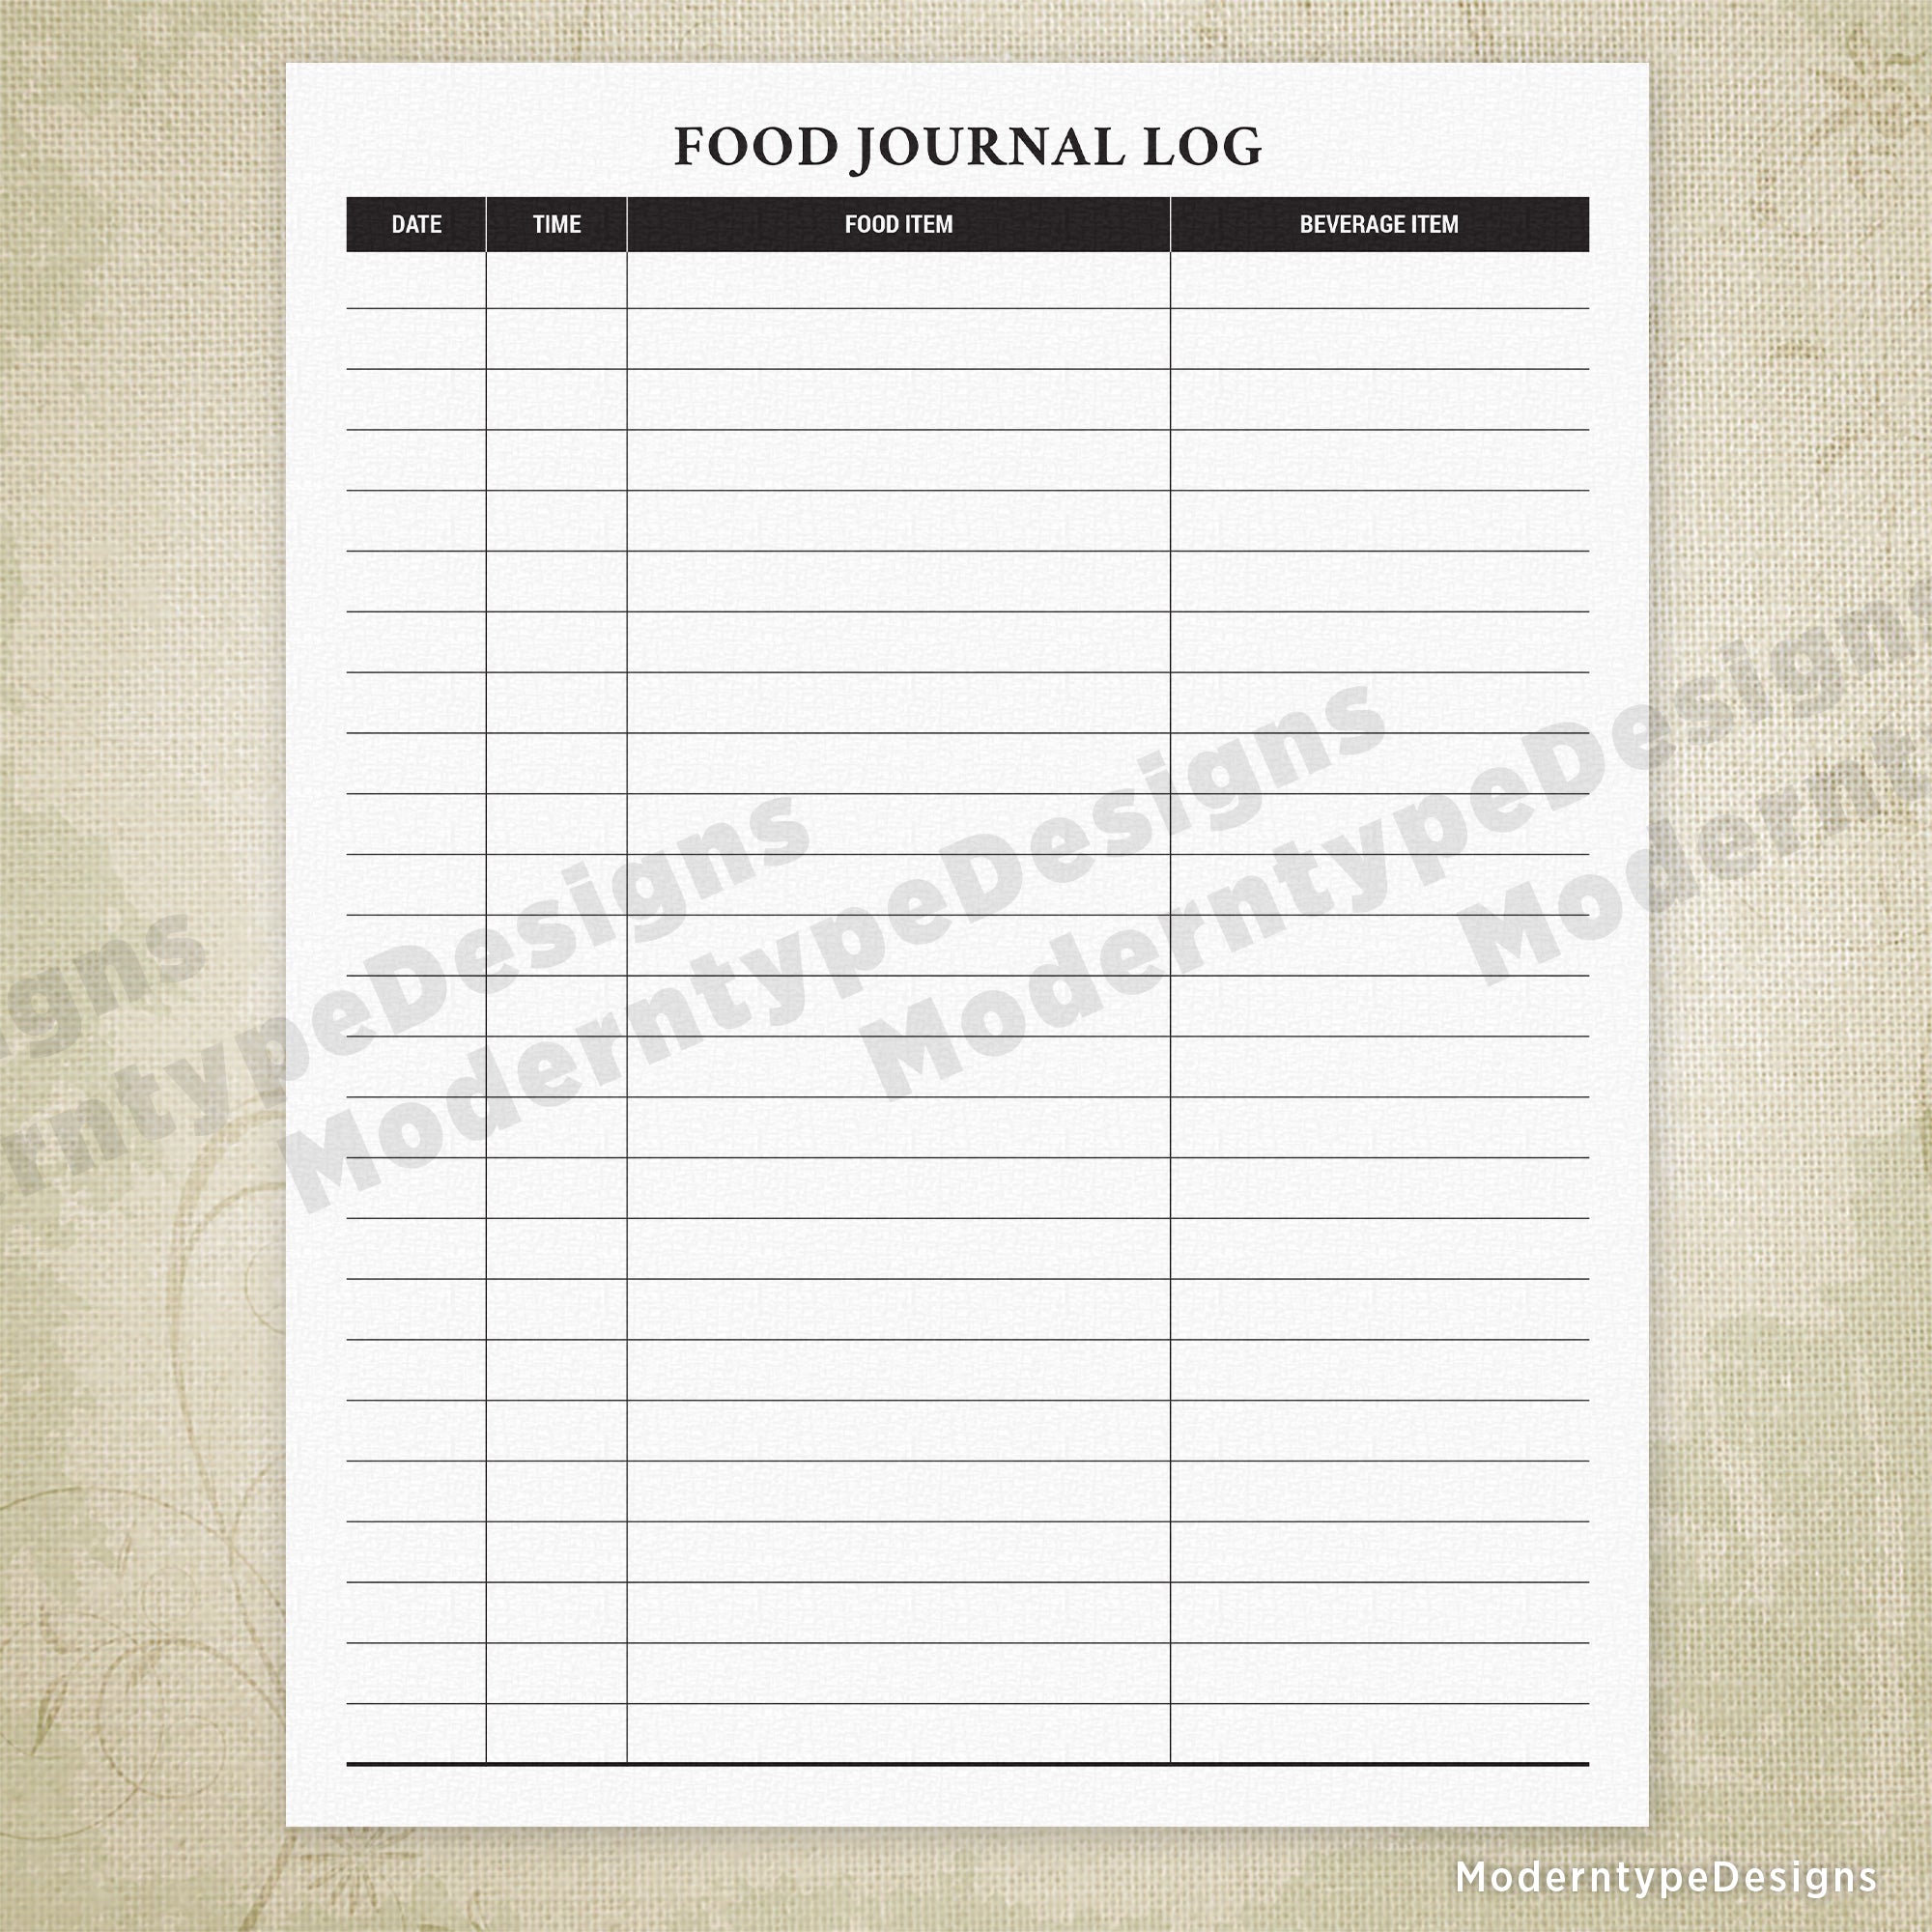 Food Journal Log Printable Form #2